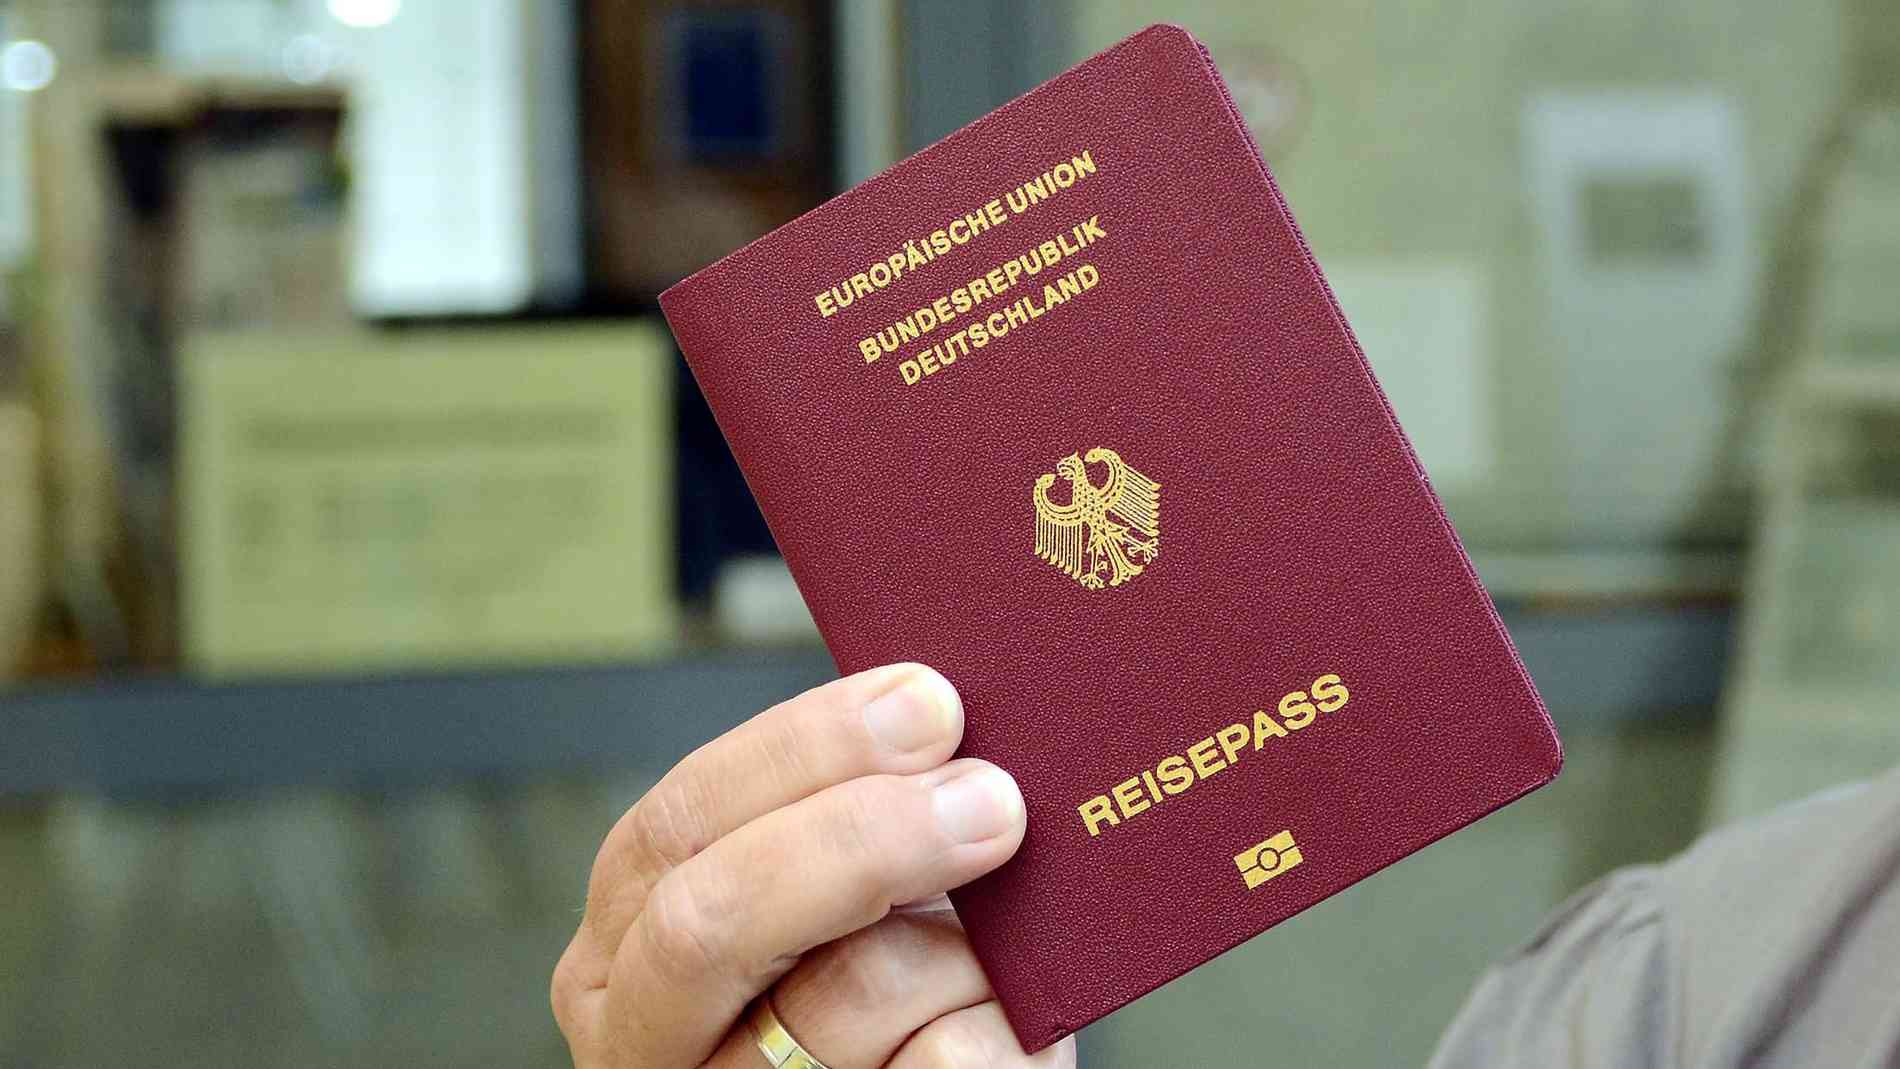 ألمانيا تقر مشروع قانون لتسهيل الحصول على الجنسية